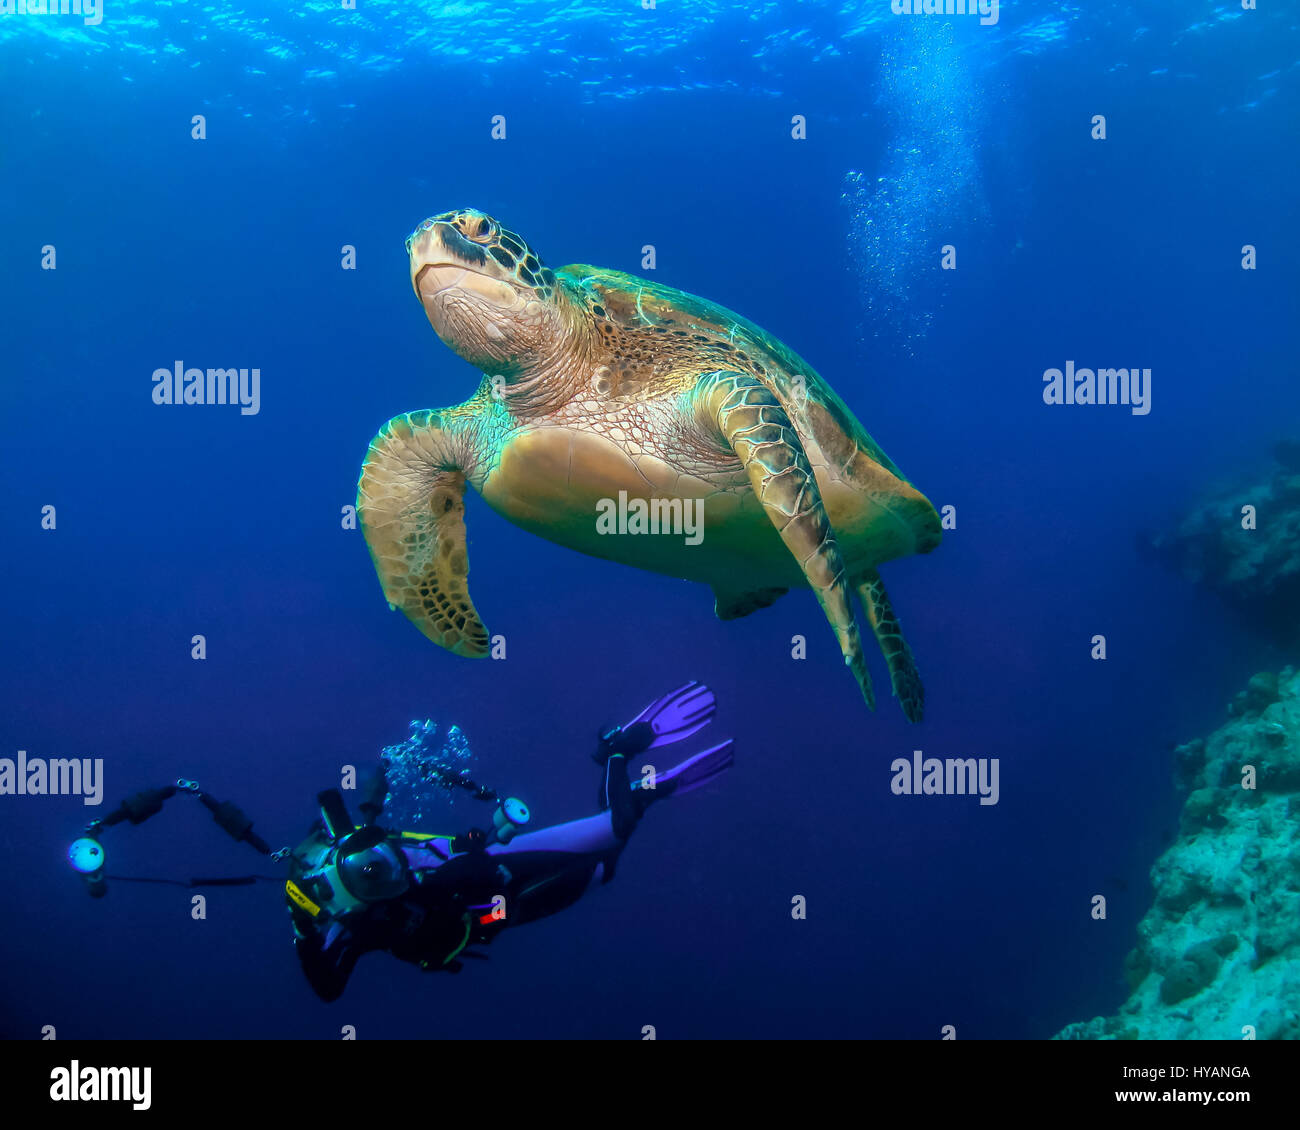 Malediven: Unechte Turlte schwimmen. WORLD Ocean Day 2015 wird durch diese bunte Sammlung von Unterwasser Lebewesen aus rund um den Globus gefeiert. Von neugierigen Karettschildkröten auf den Malediven zum größten Fisch der Welt, der mächtige 30-Tonne-Walhai diese Bilder sind eine Hommage an unseren Planeten vielfältig – aber zerbrechlich – Ozeane. Gefeiert wird von Naturliebhaber auf unserem Planeten World Ocean Day findet am 8. Juni sieht in diesem Jahr Hunderte von Veranstaltungen, Vorträgen und Ausstellungen weltweit, darunter 12 Veranstaltungen im Vereinigten Königreich allein. Marine Fotograf Super Jolly (37) erklärt Stockfoto